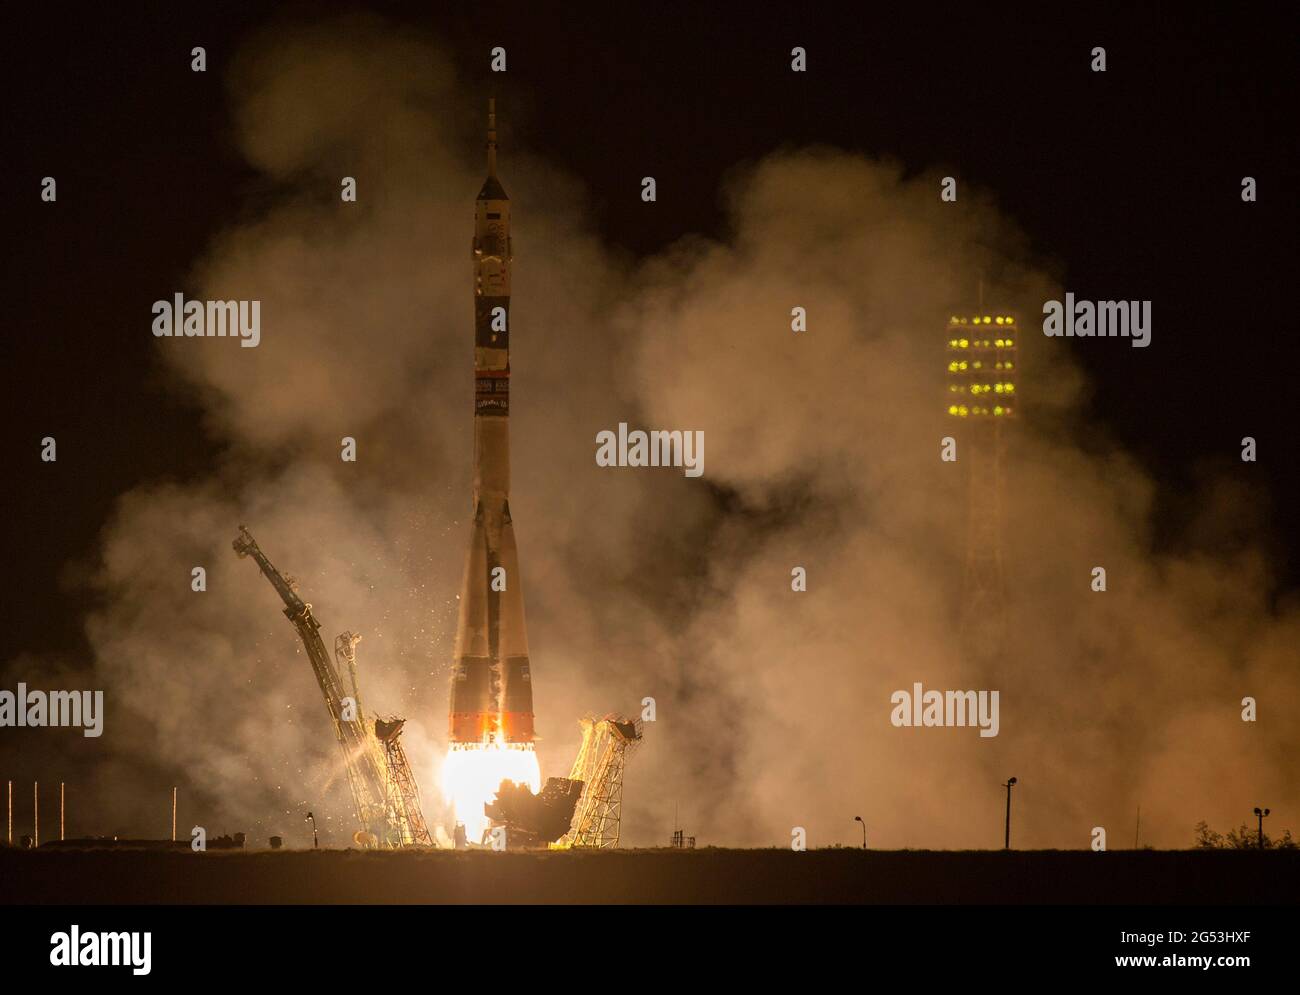 BAIKONUR COSMODROME, KAZAKHSTAN - 26 settembre 2014 - il razzo Soyuz TMA-14M viene lanciato con la spedizione 41 del comandante di Soyuz Alexander Samokutyaev Foto Stock